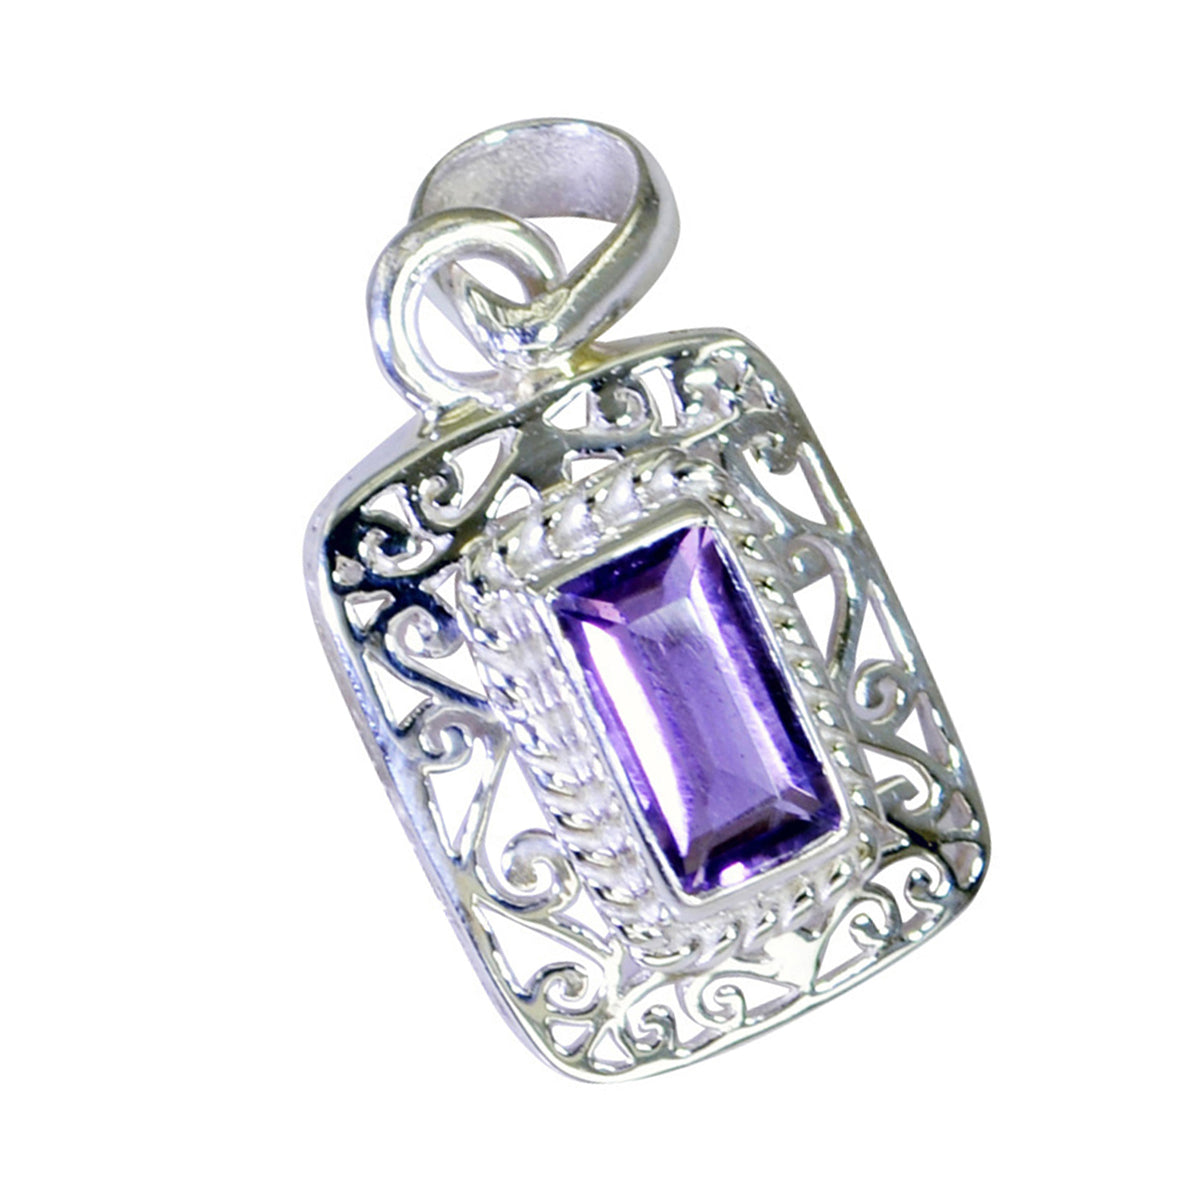 Riyo Heavenly Gems Anhänger, achteckig, facettiert, violetter Amethyst, massives Silber, Geschenk für Karfreitag